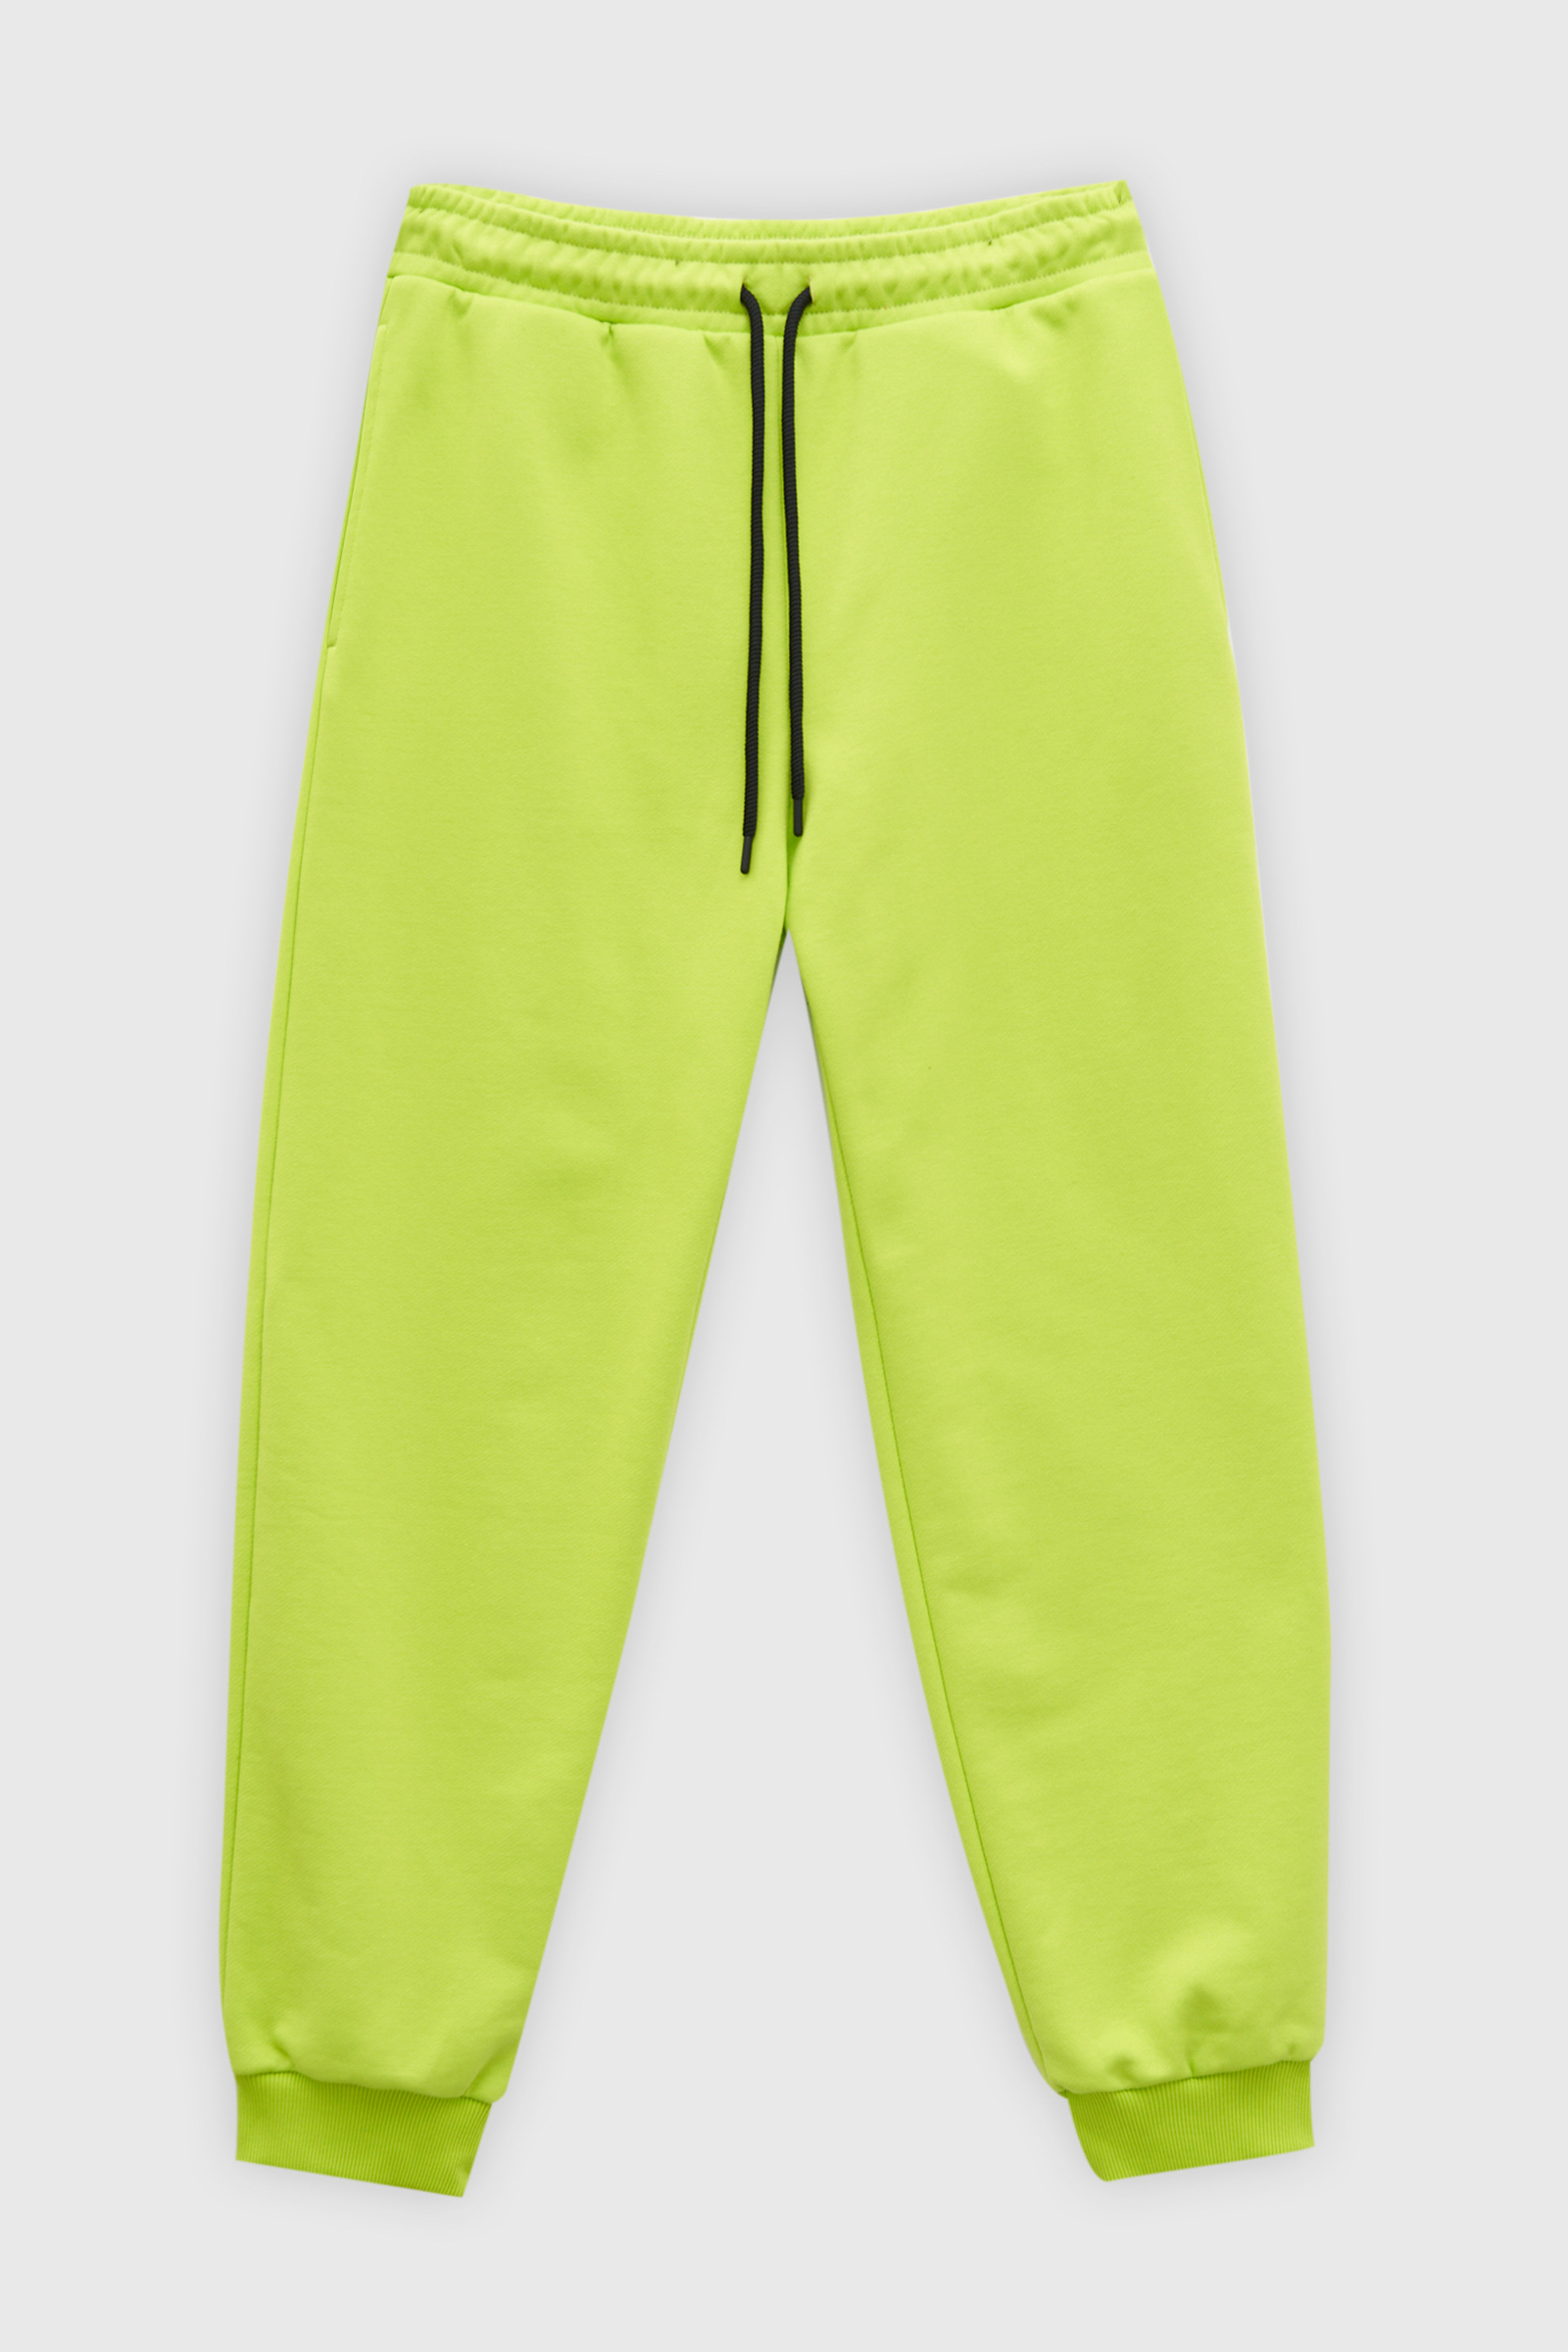 Спортивные брюки мужские Finn Flare FAD210116 зеленые M